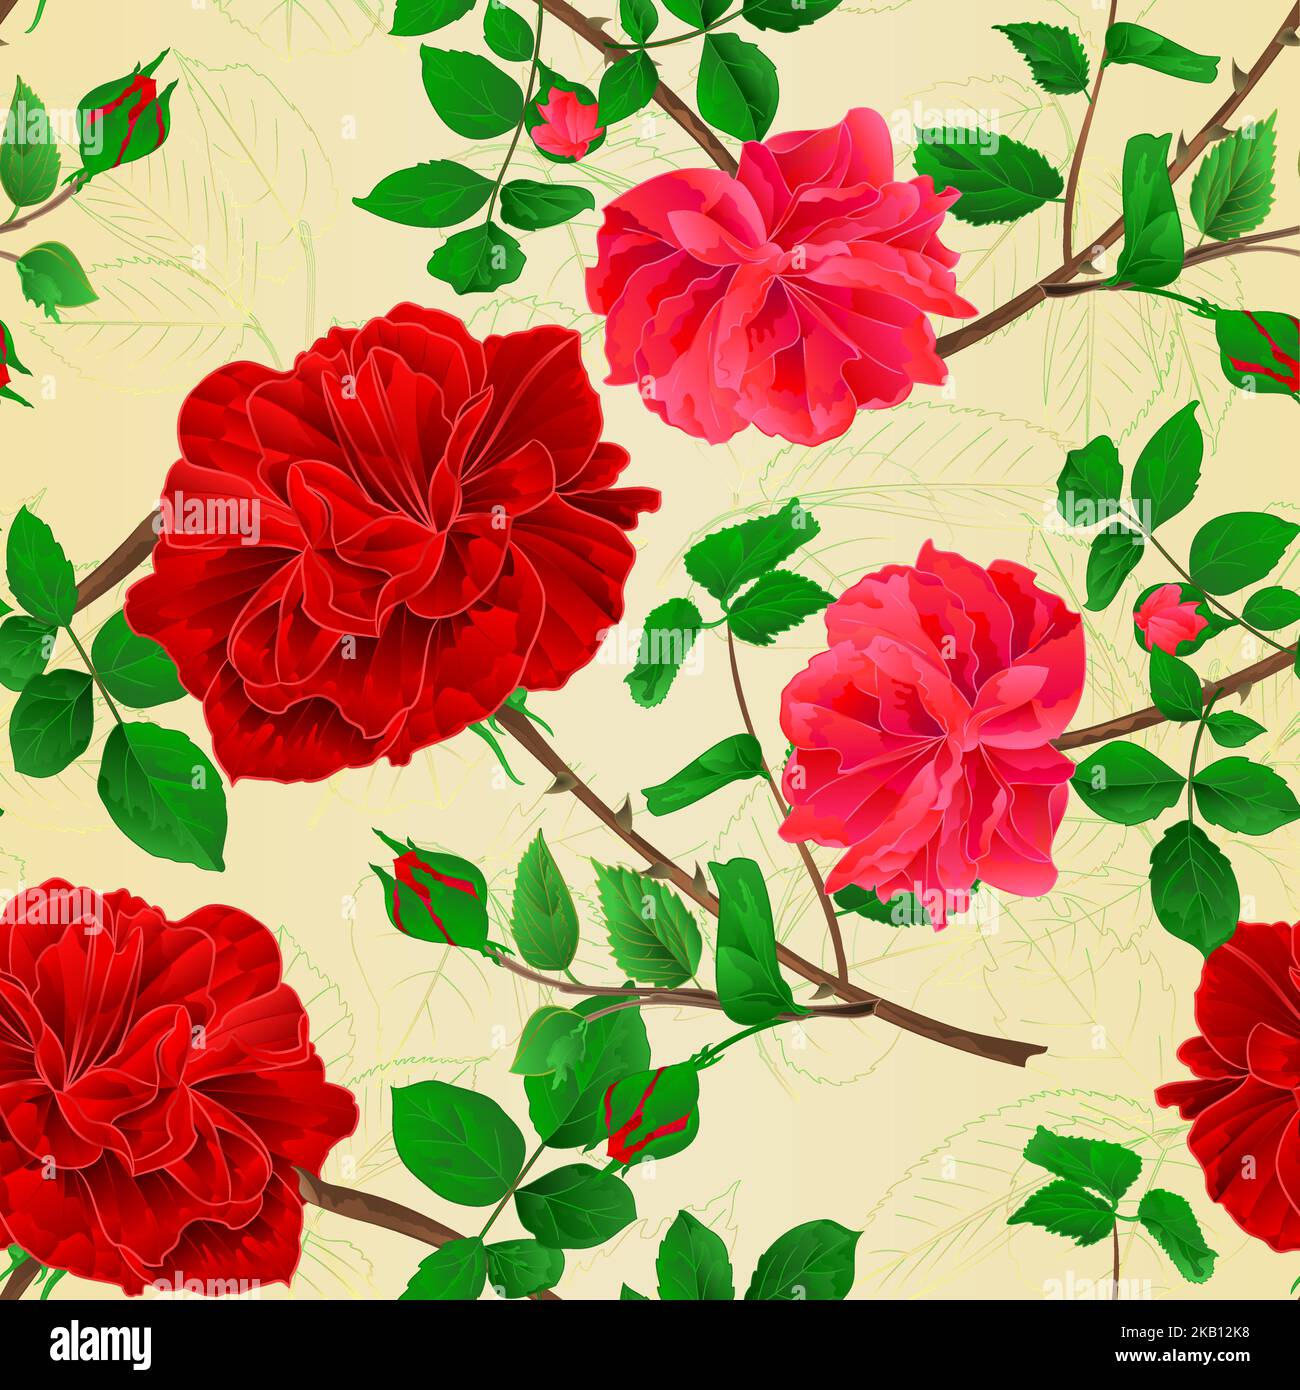 Nahtlose Textur Stiele Blume roten und rosa Rosen und Blätter vintage Vektor botanische Illustration editierbar Handzeichnen Stock Vektor